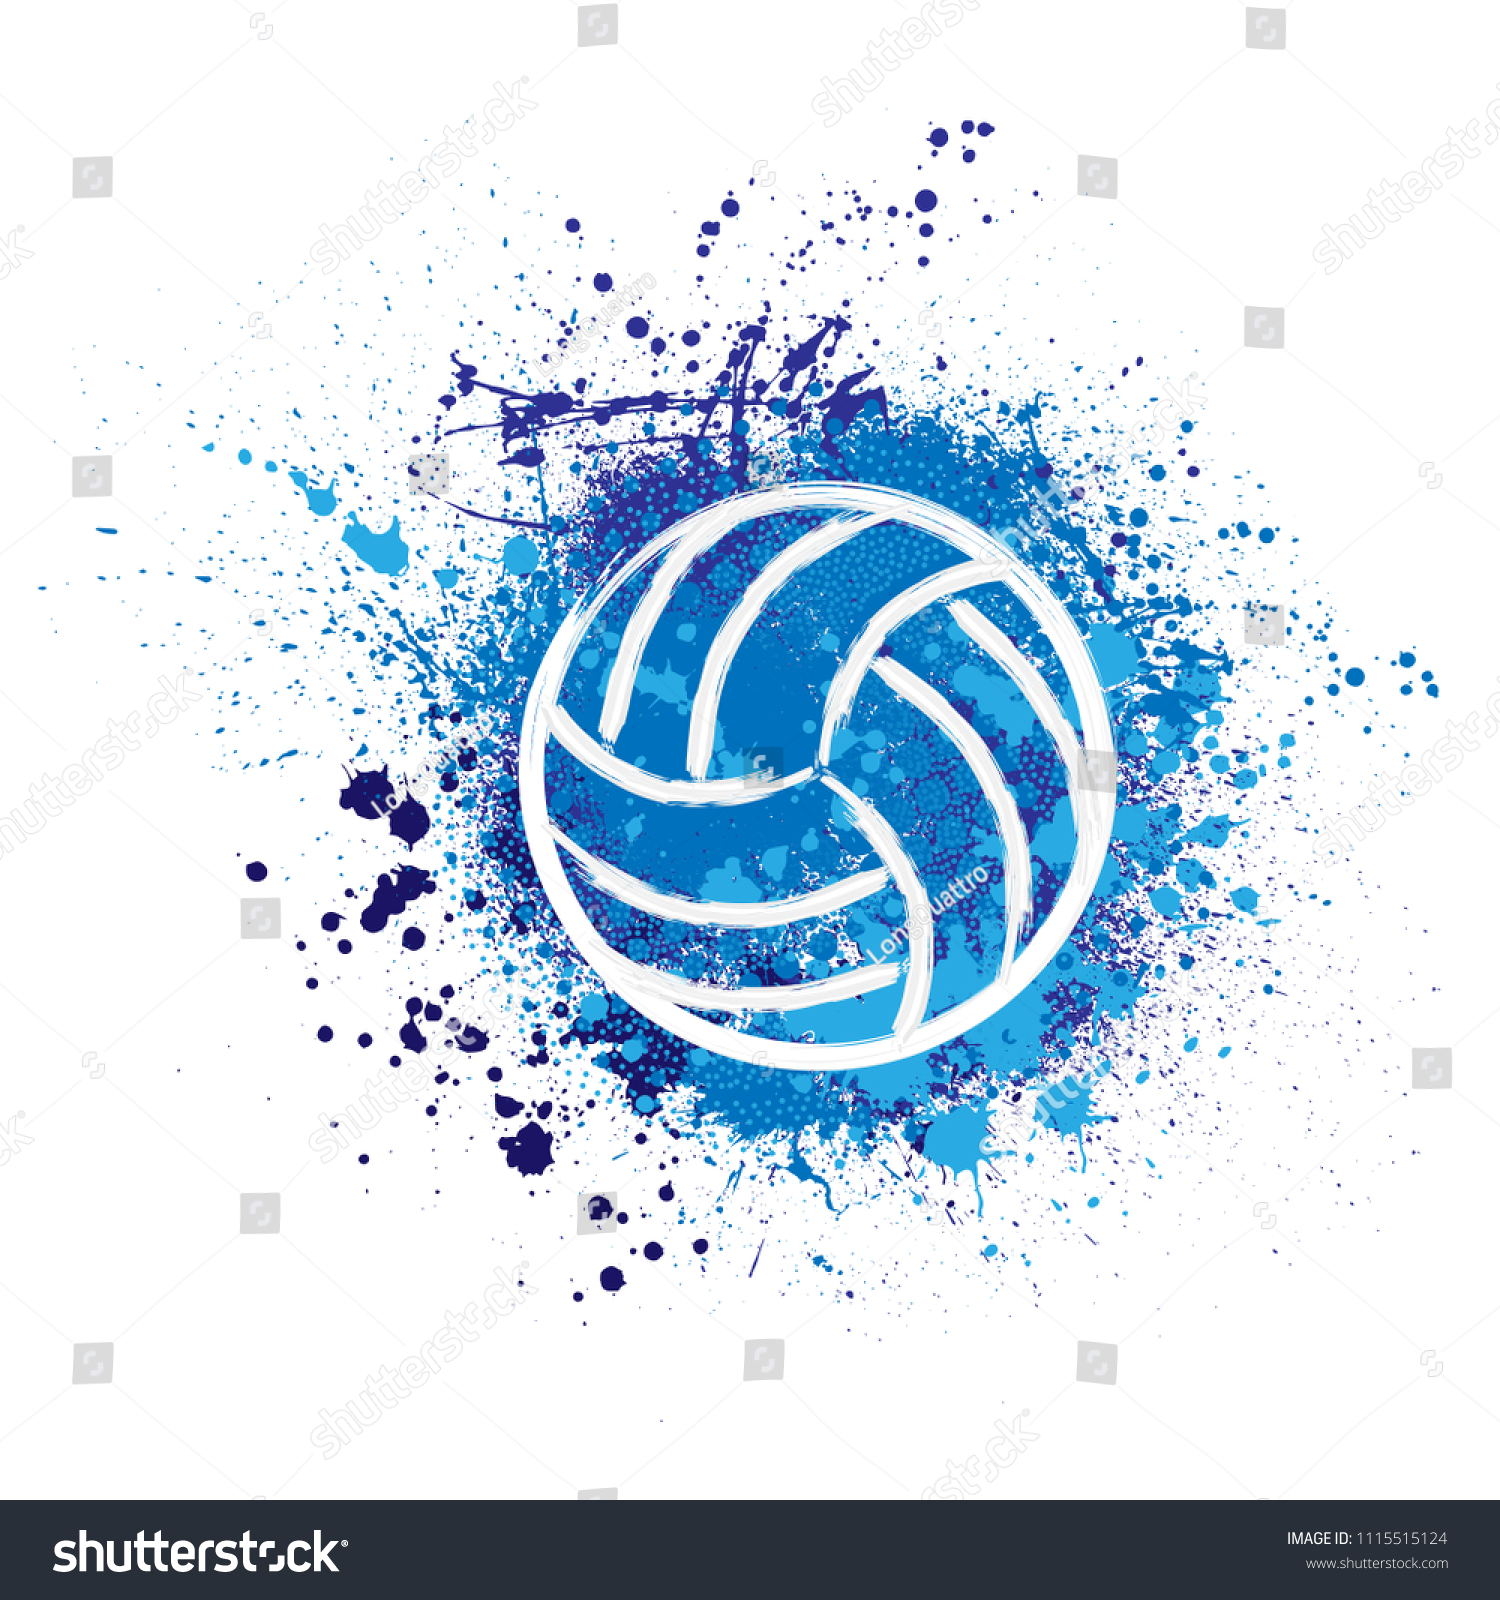 539 Volleyball Splash Design Images, Stock Photos & Vectors | Shutterstock